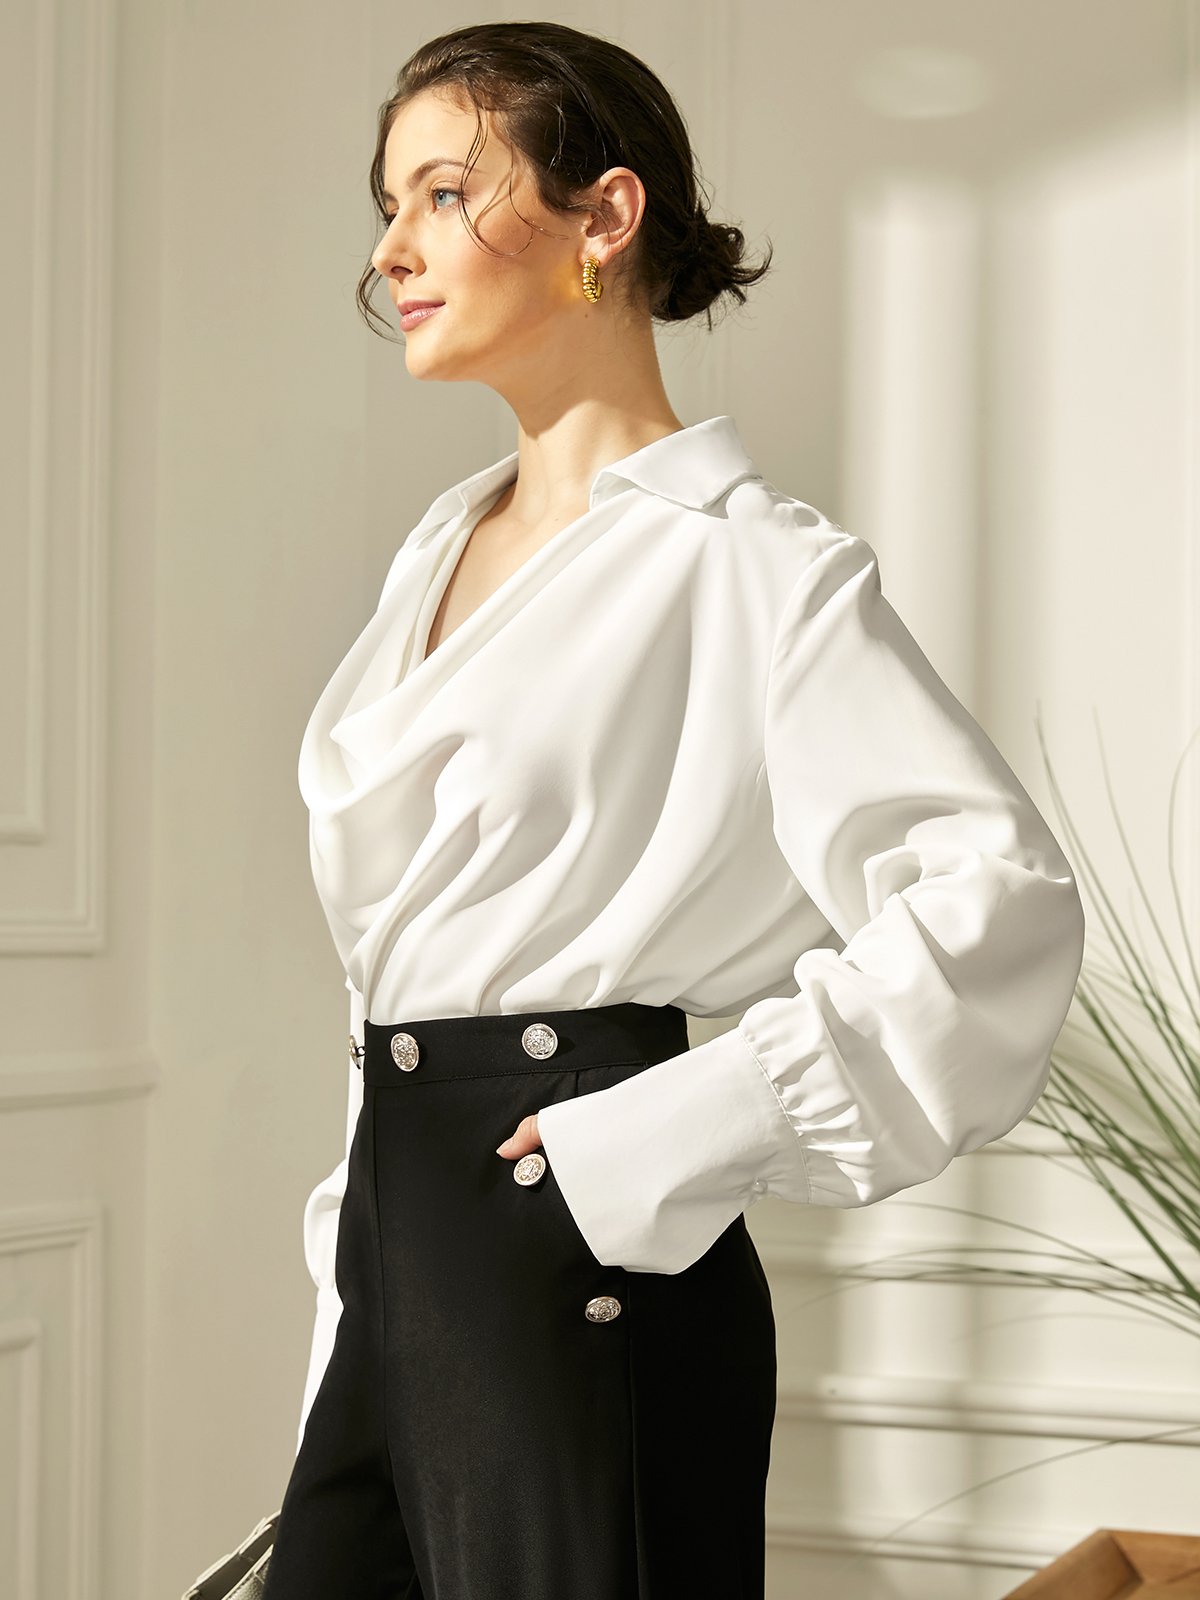 Hemdkragen Weit Elegant Unifarben Bluse